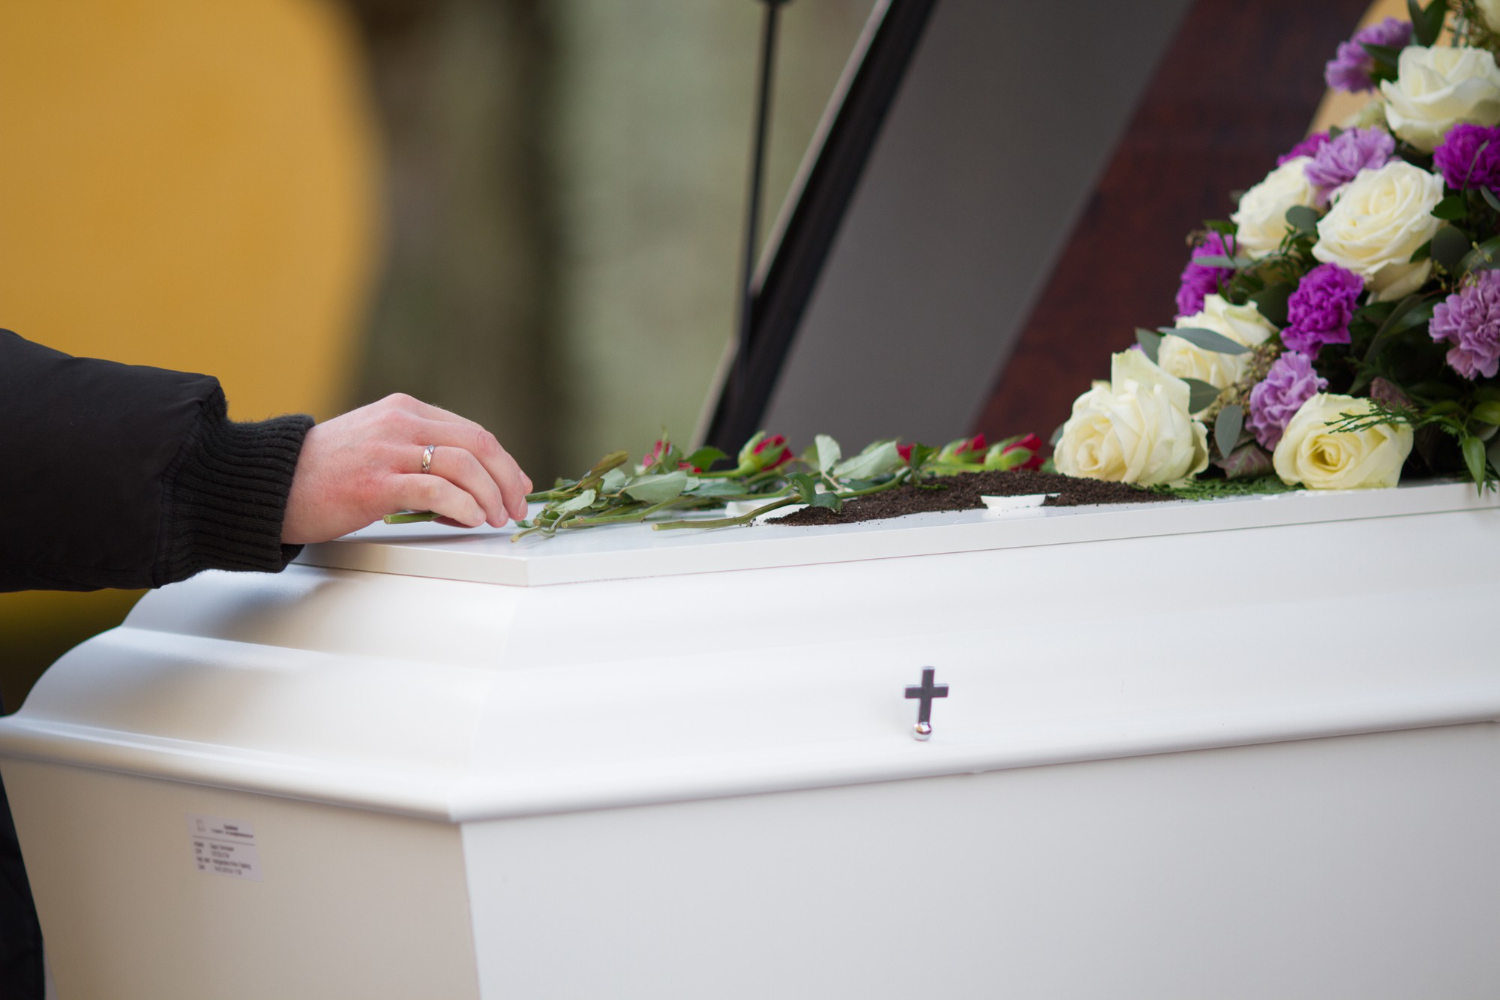 coffin